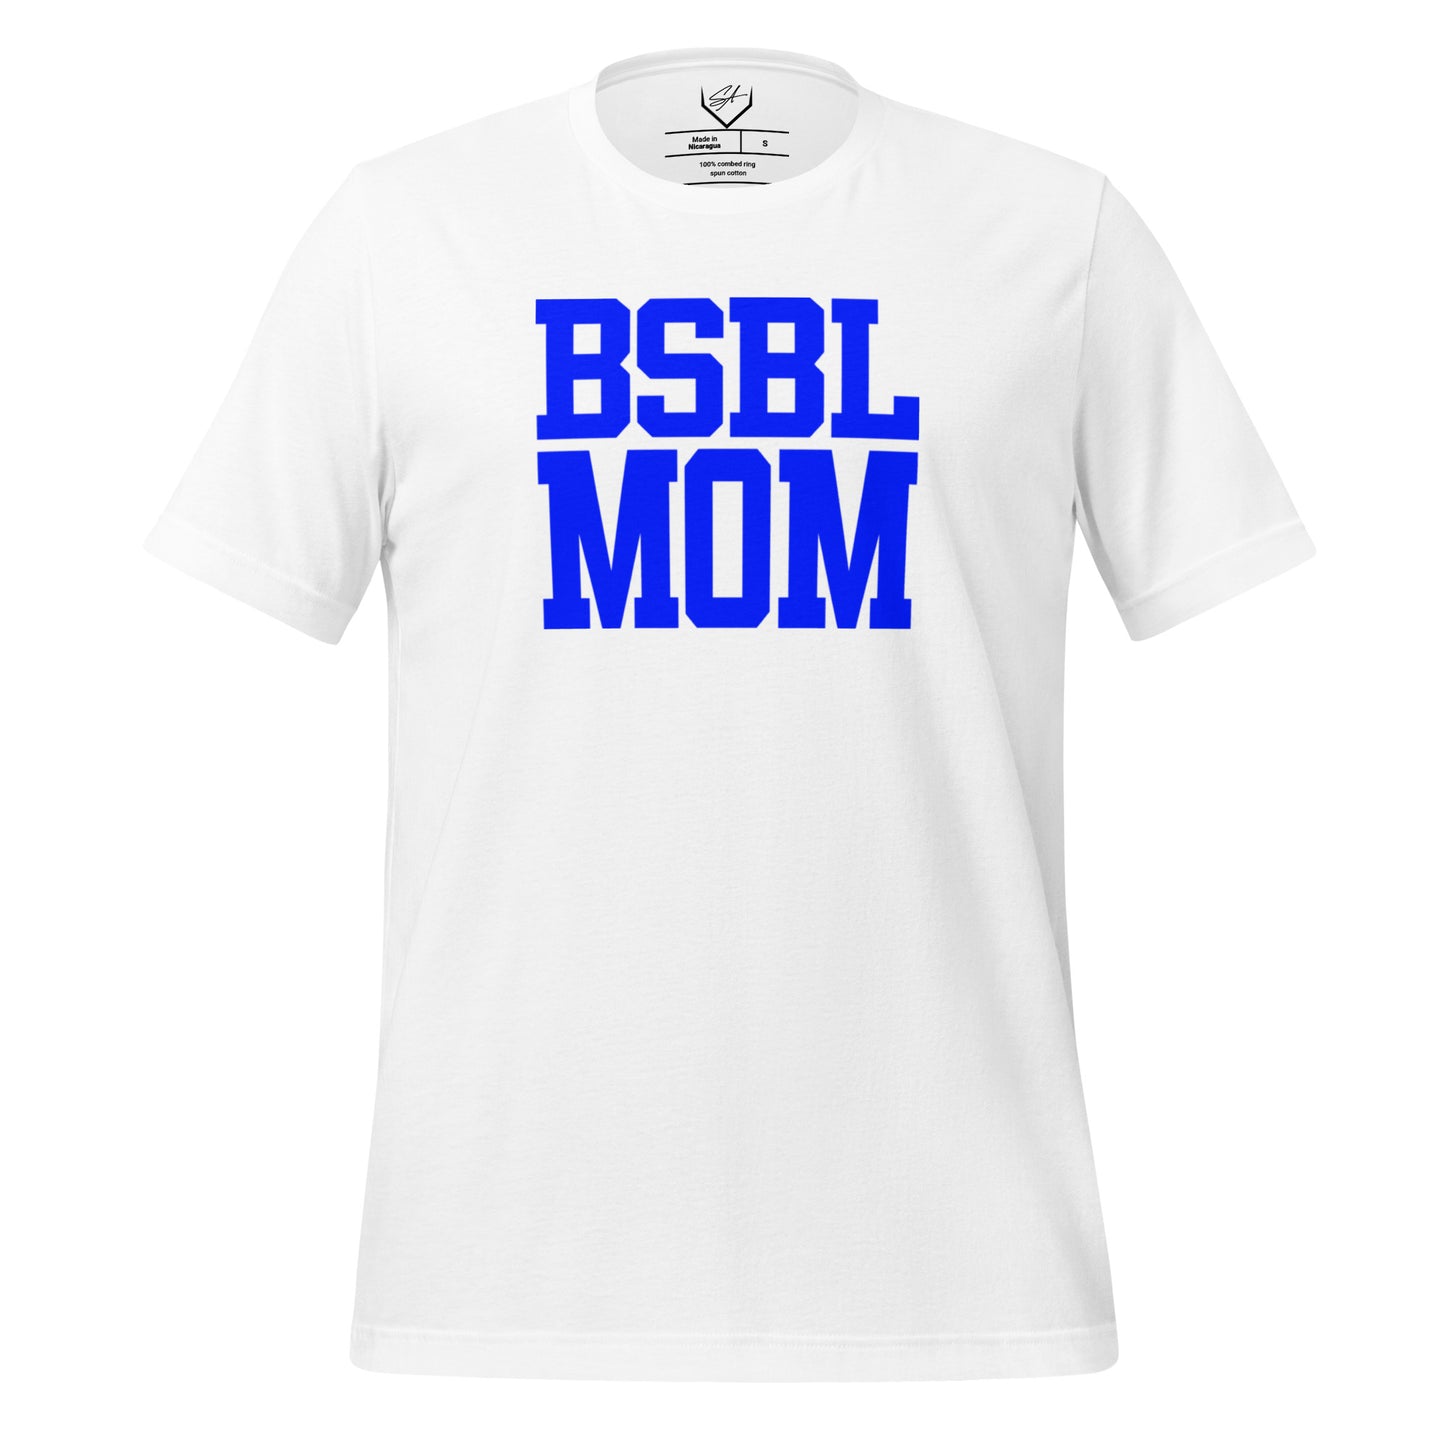 BSBL Mom Blue - Adult Tee